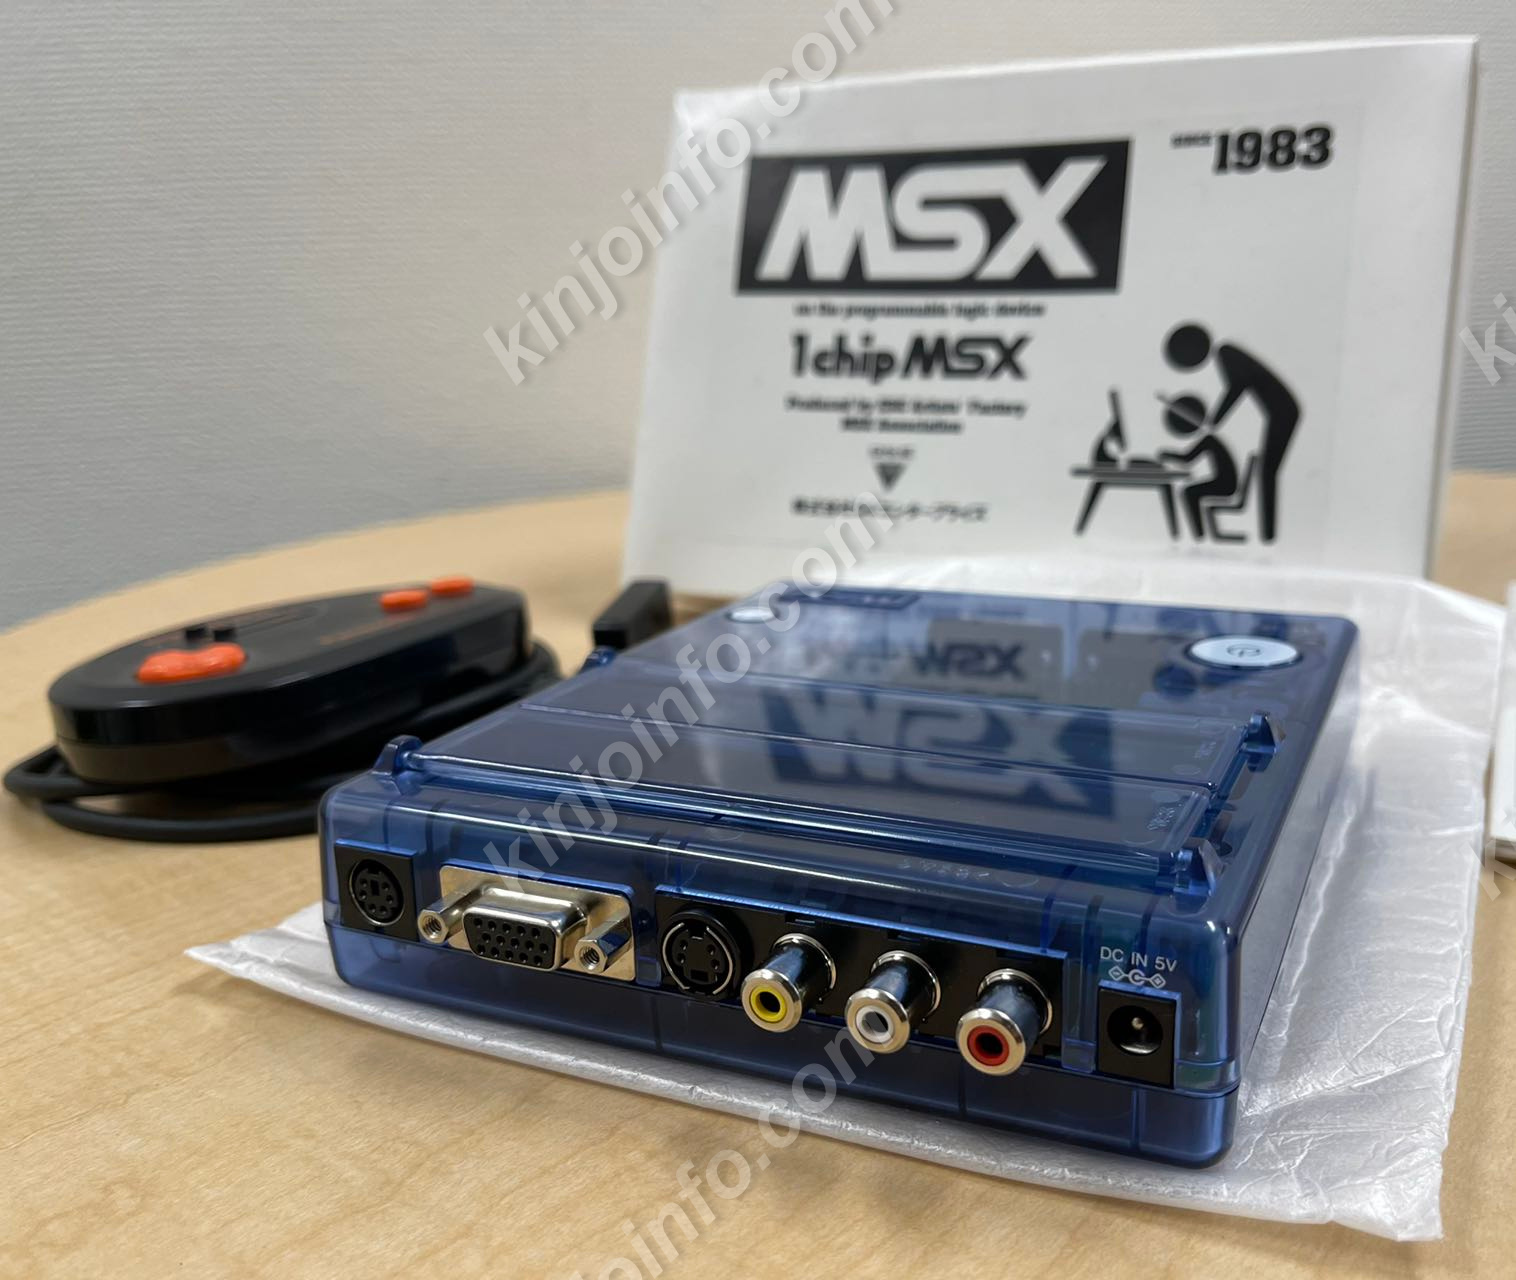 1チップMSX 1chip msx本体（MSX2相当）【新品未使用・MSX日本版 